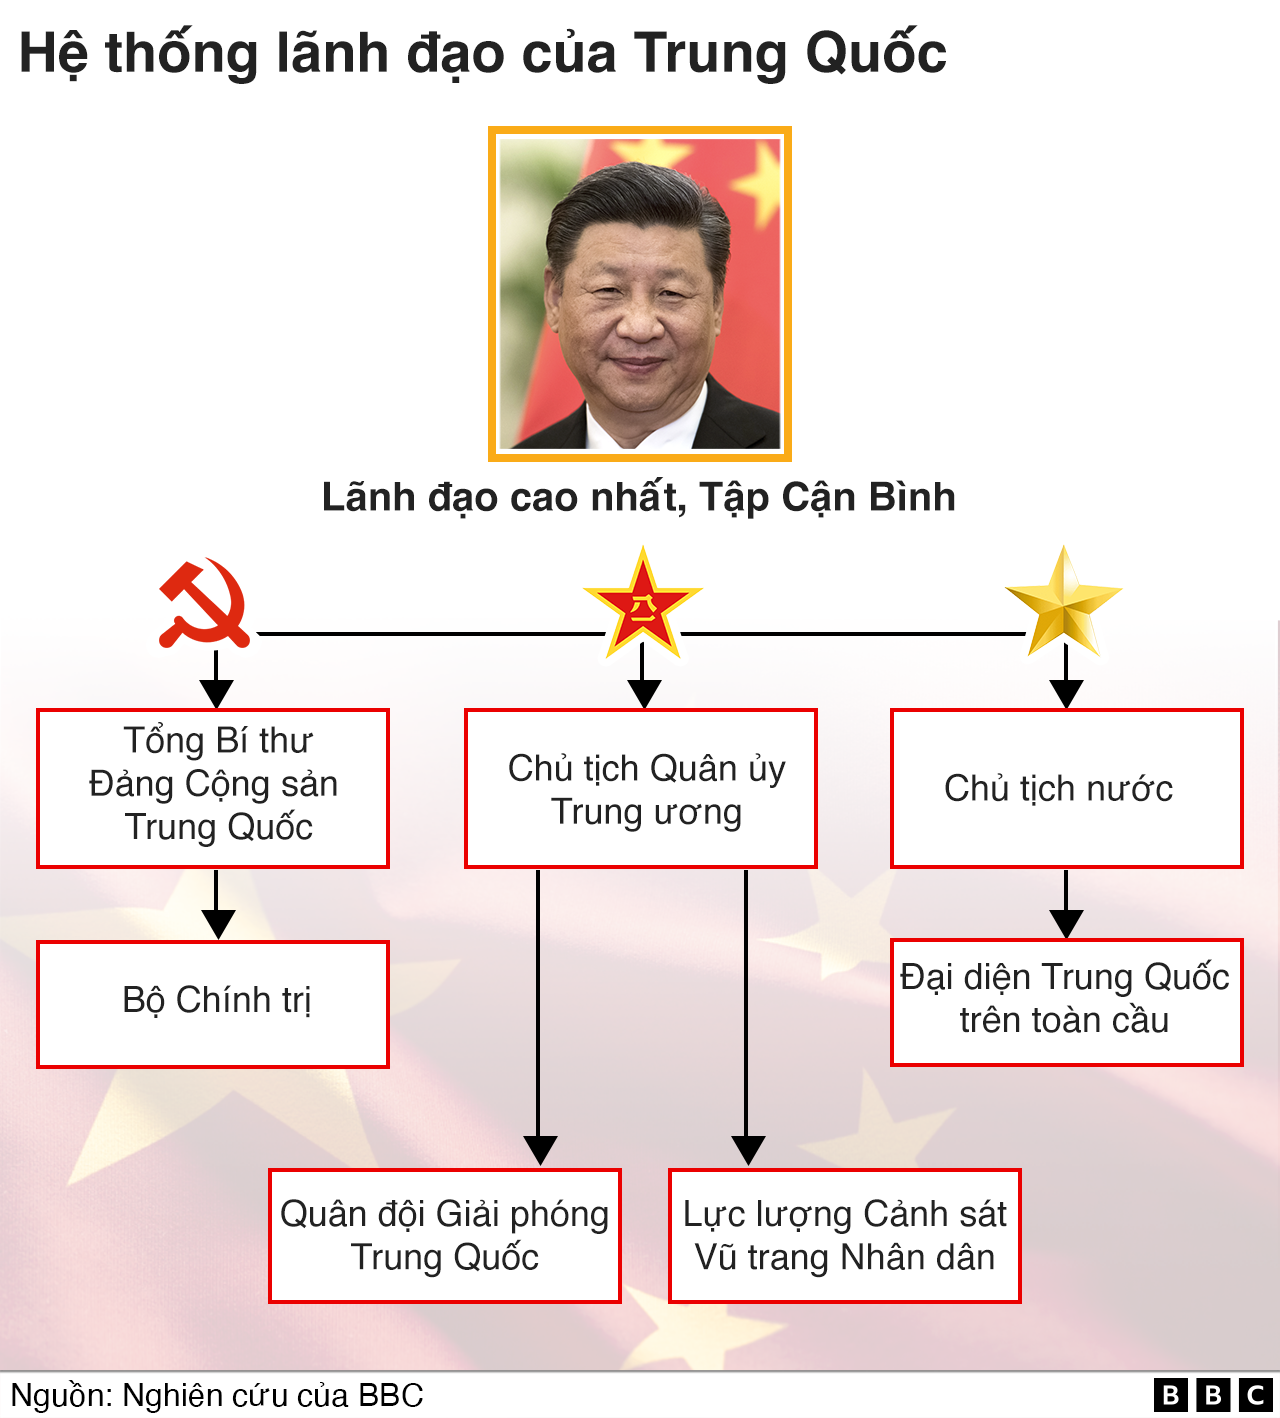 Sơ đồ hệ thống lãnh đạo ở Trung Quốc